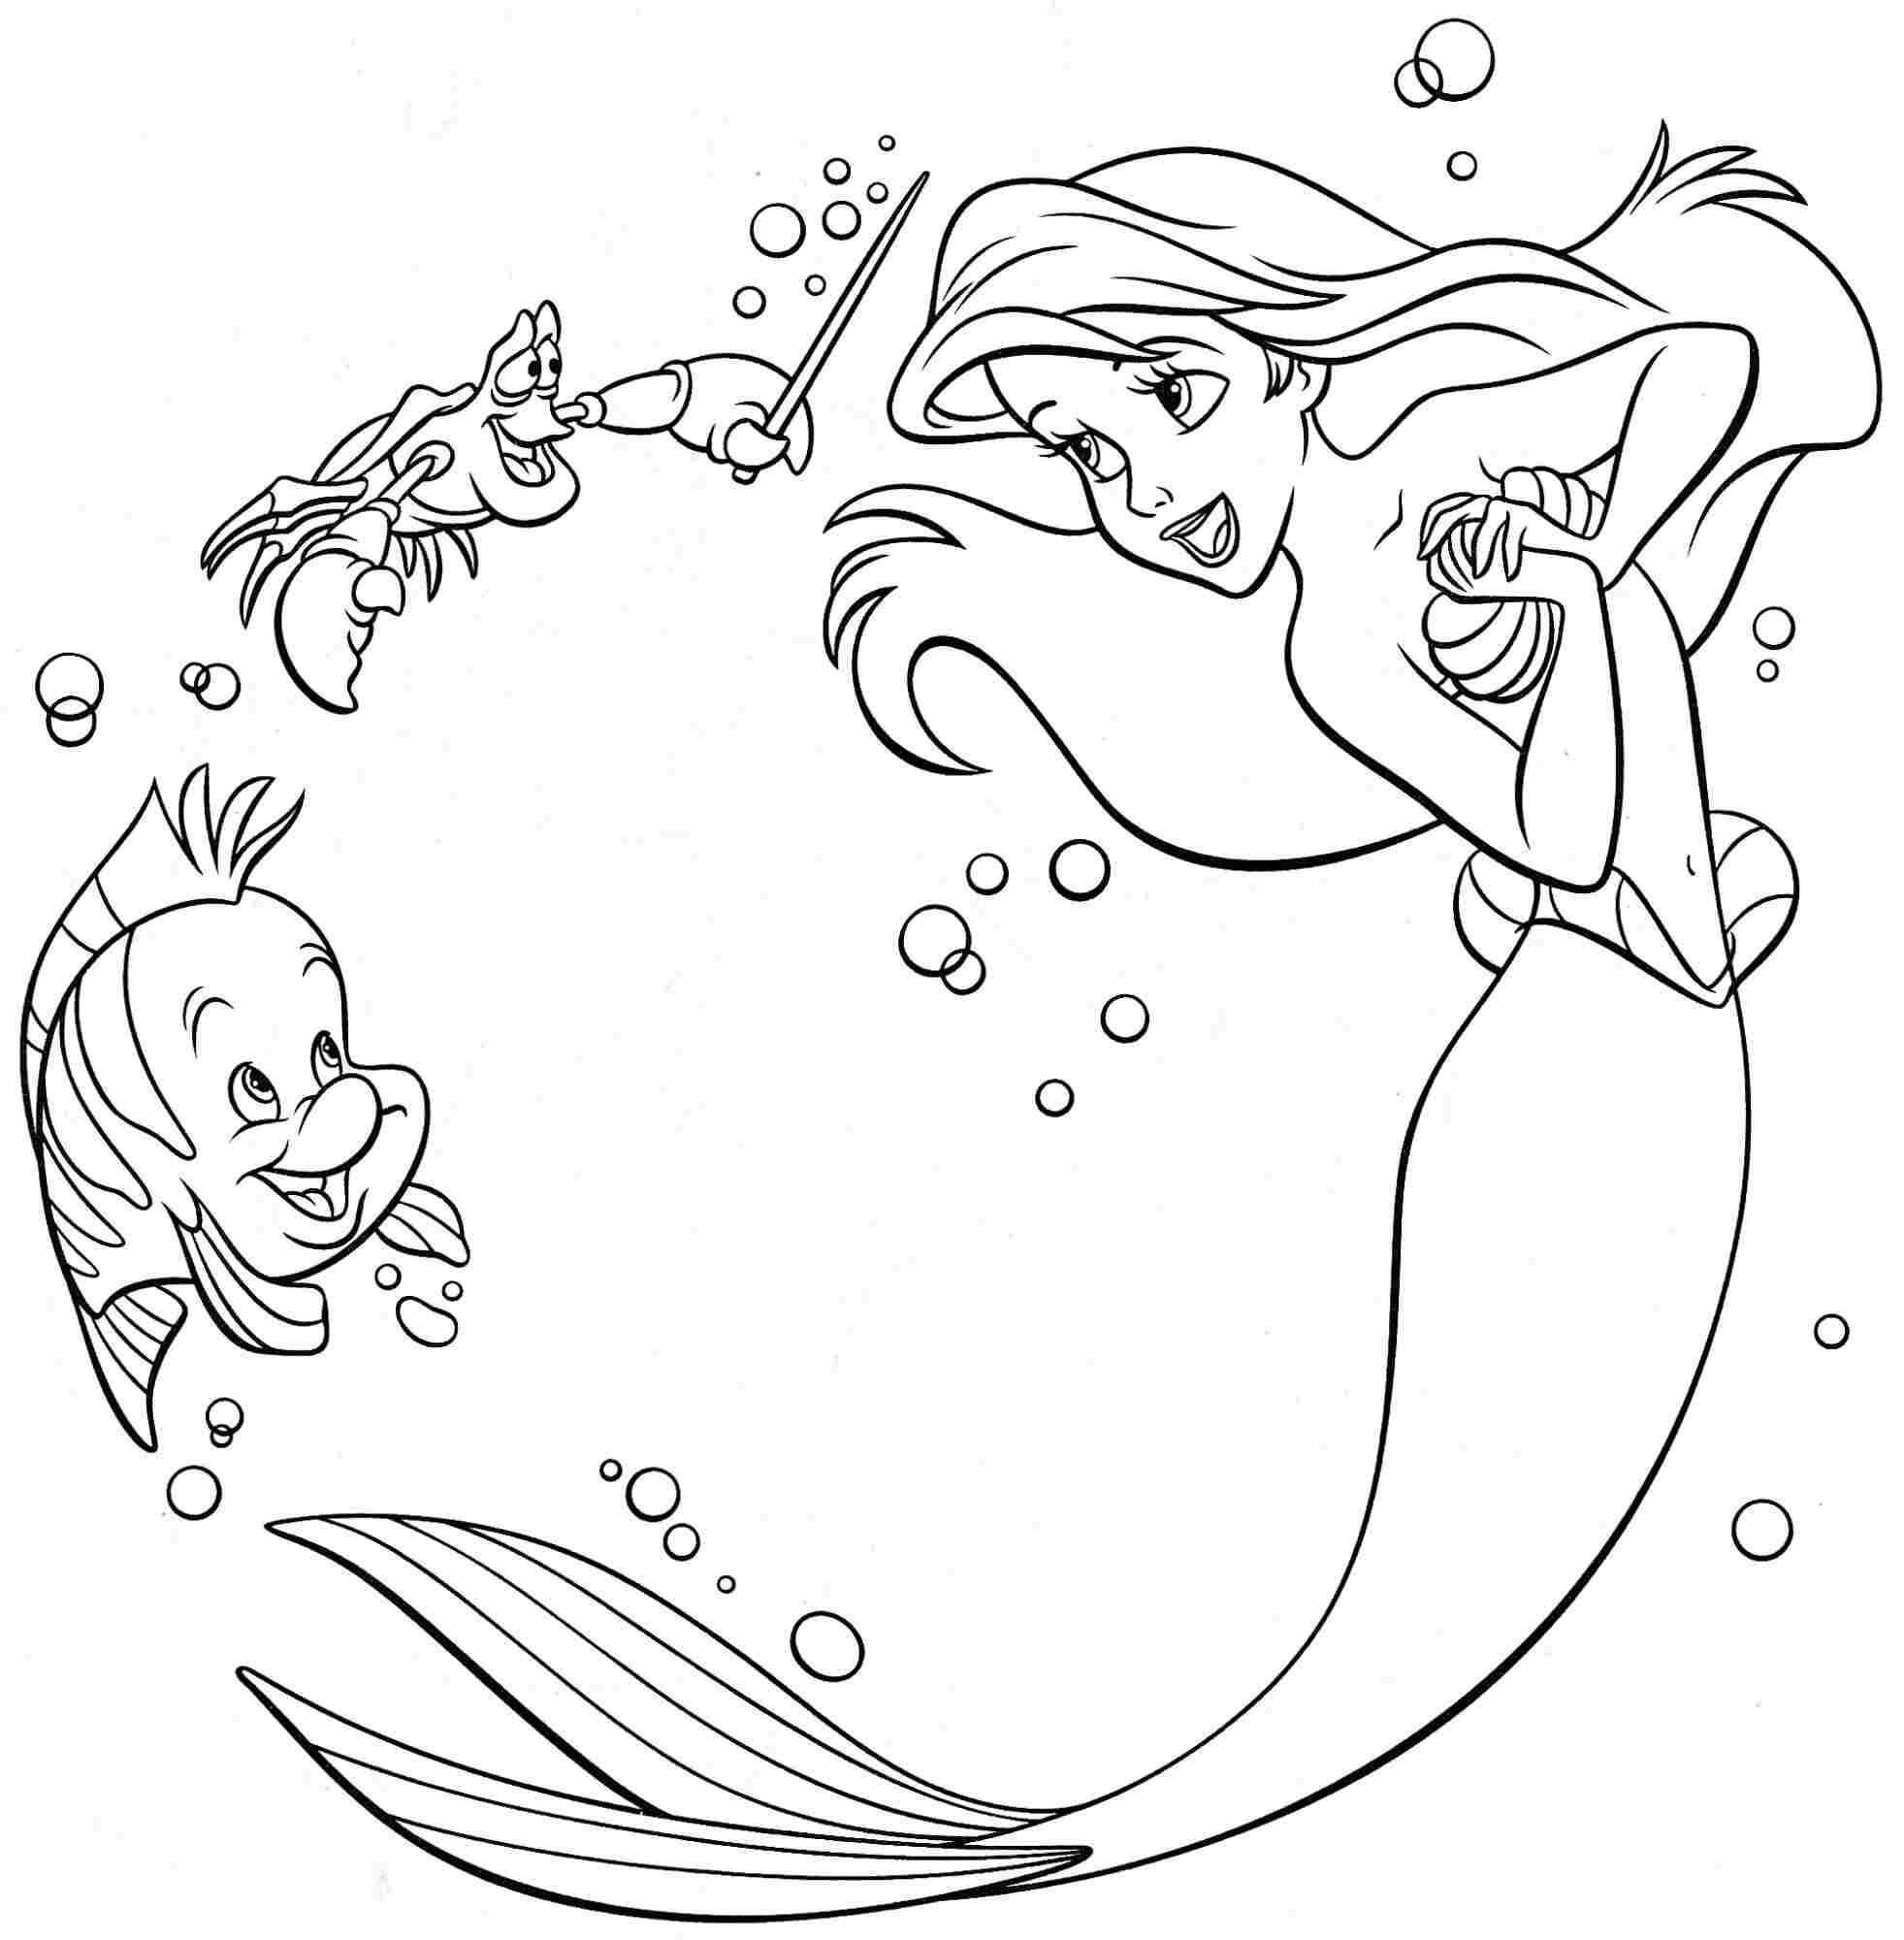 Dibujos de Sirenita Con Pescado Y Cangrejo para colorear